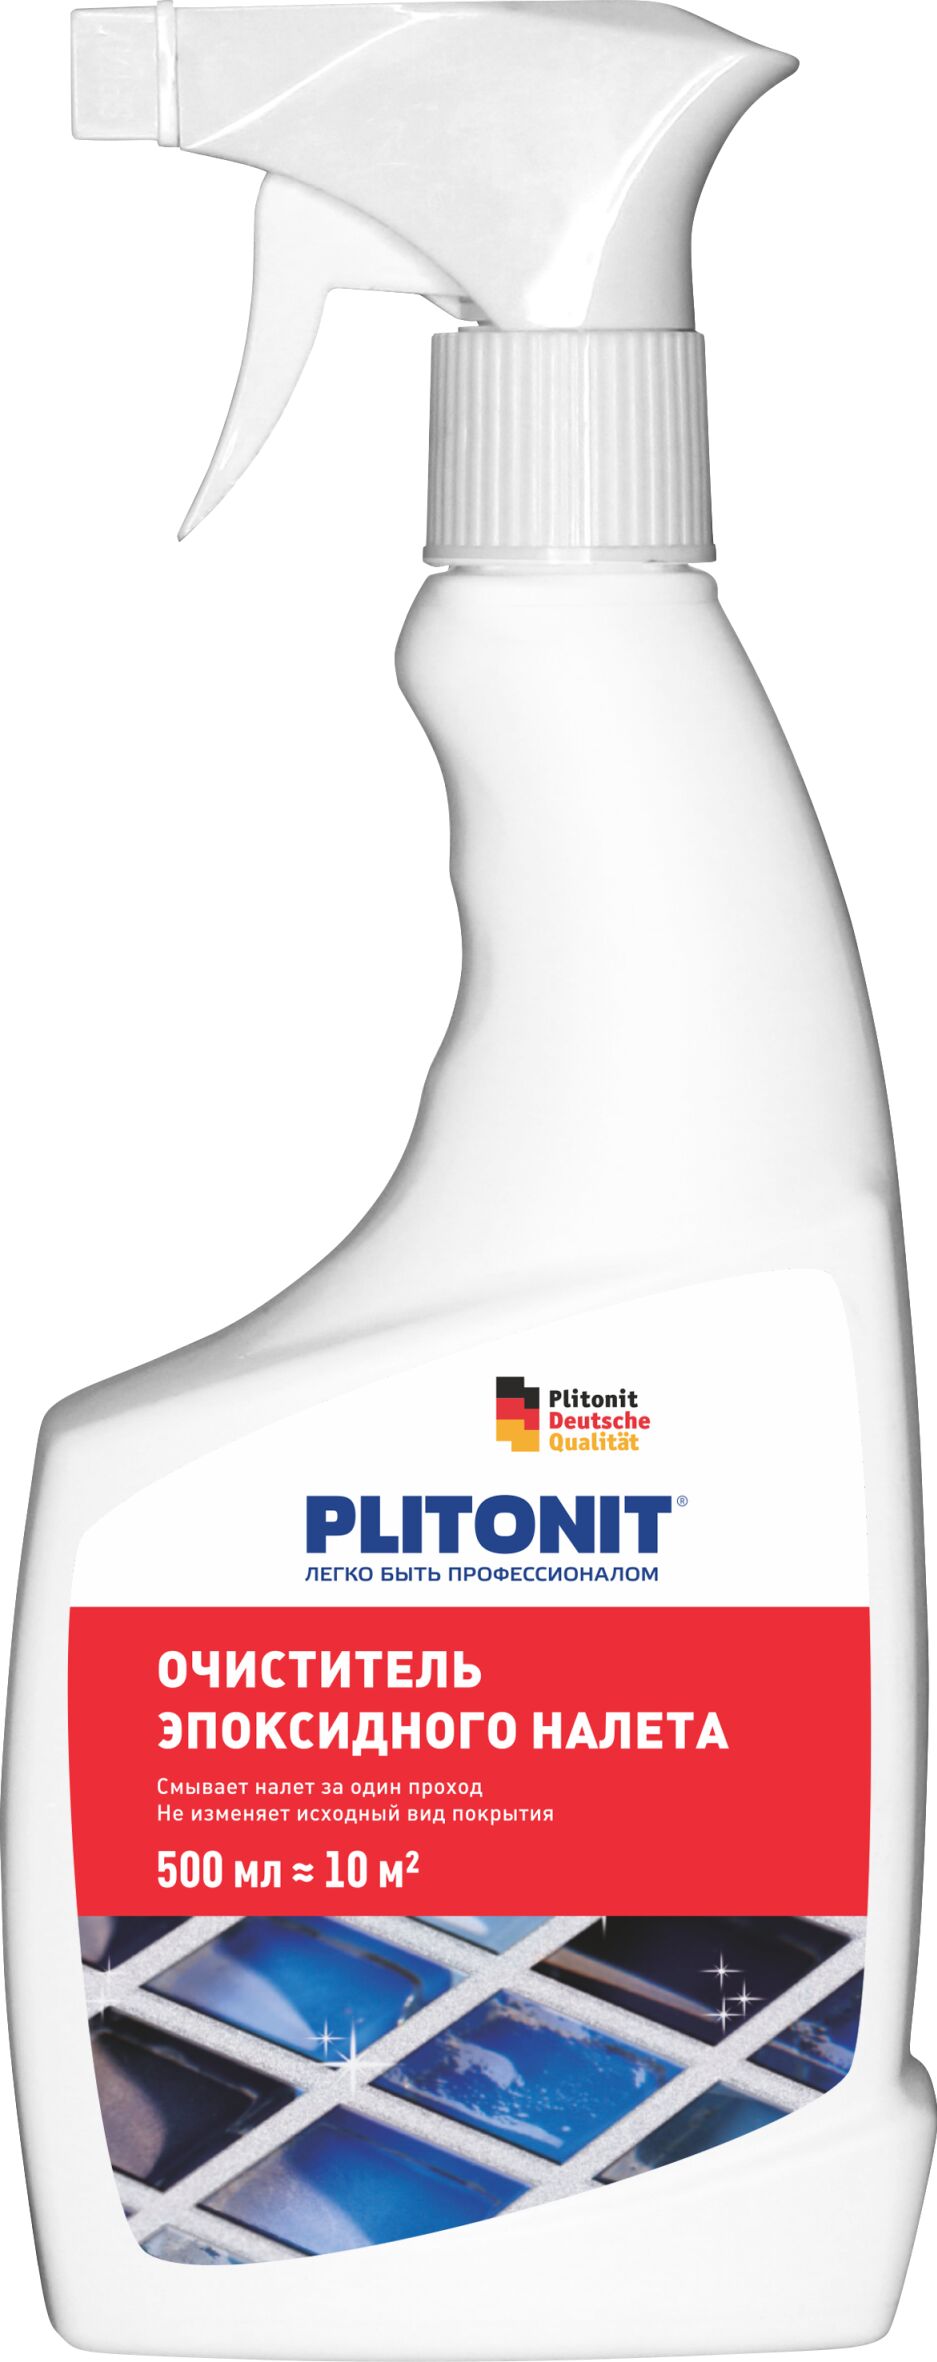 PLITONIT Очиститель эпоксидного налета - 0,5л (РФ)